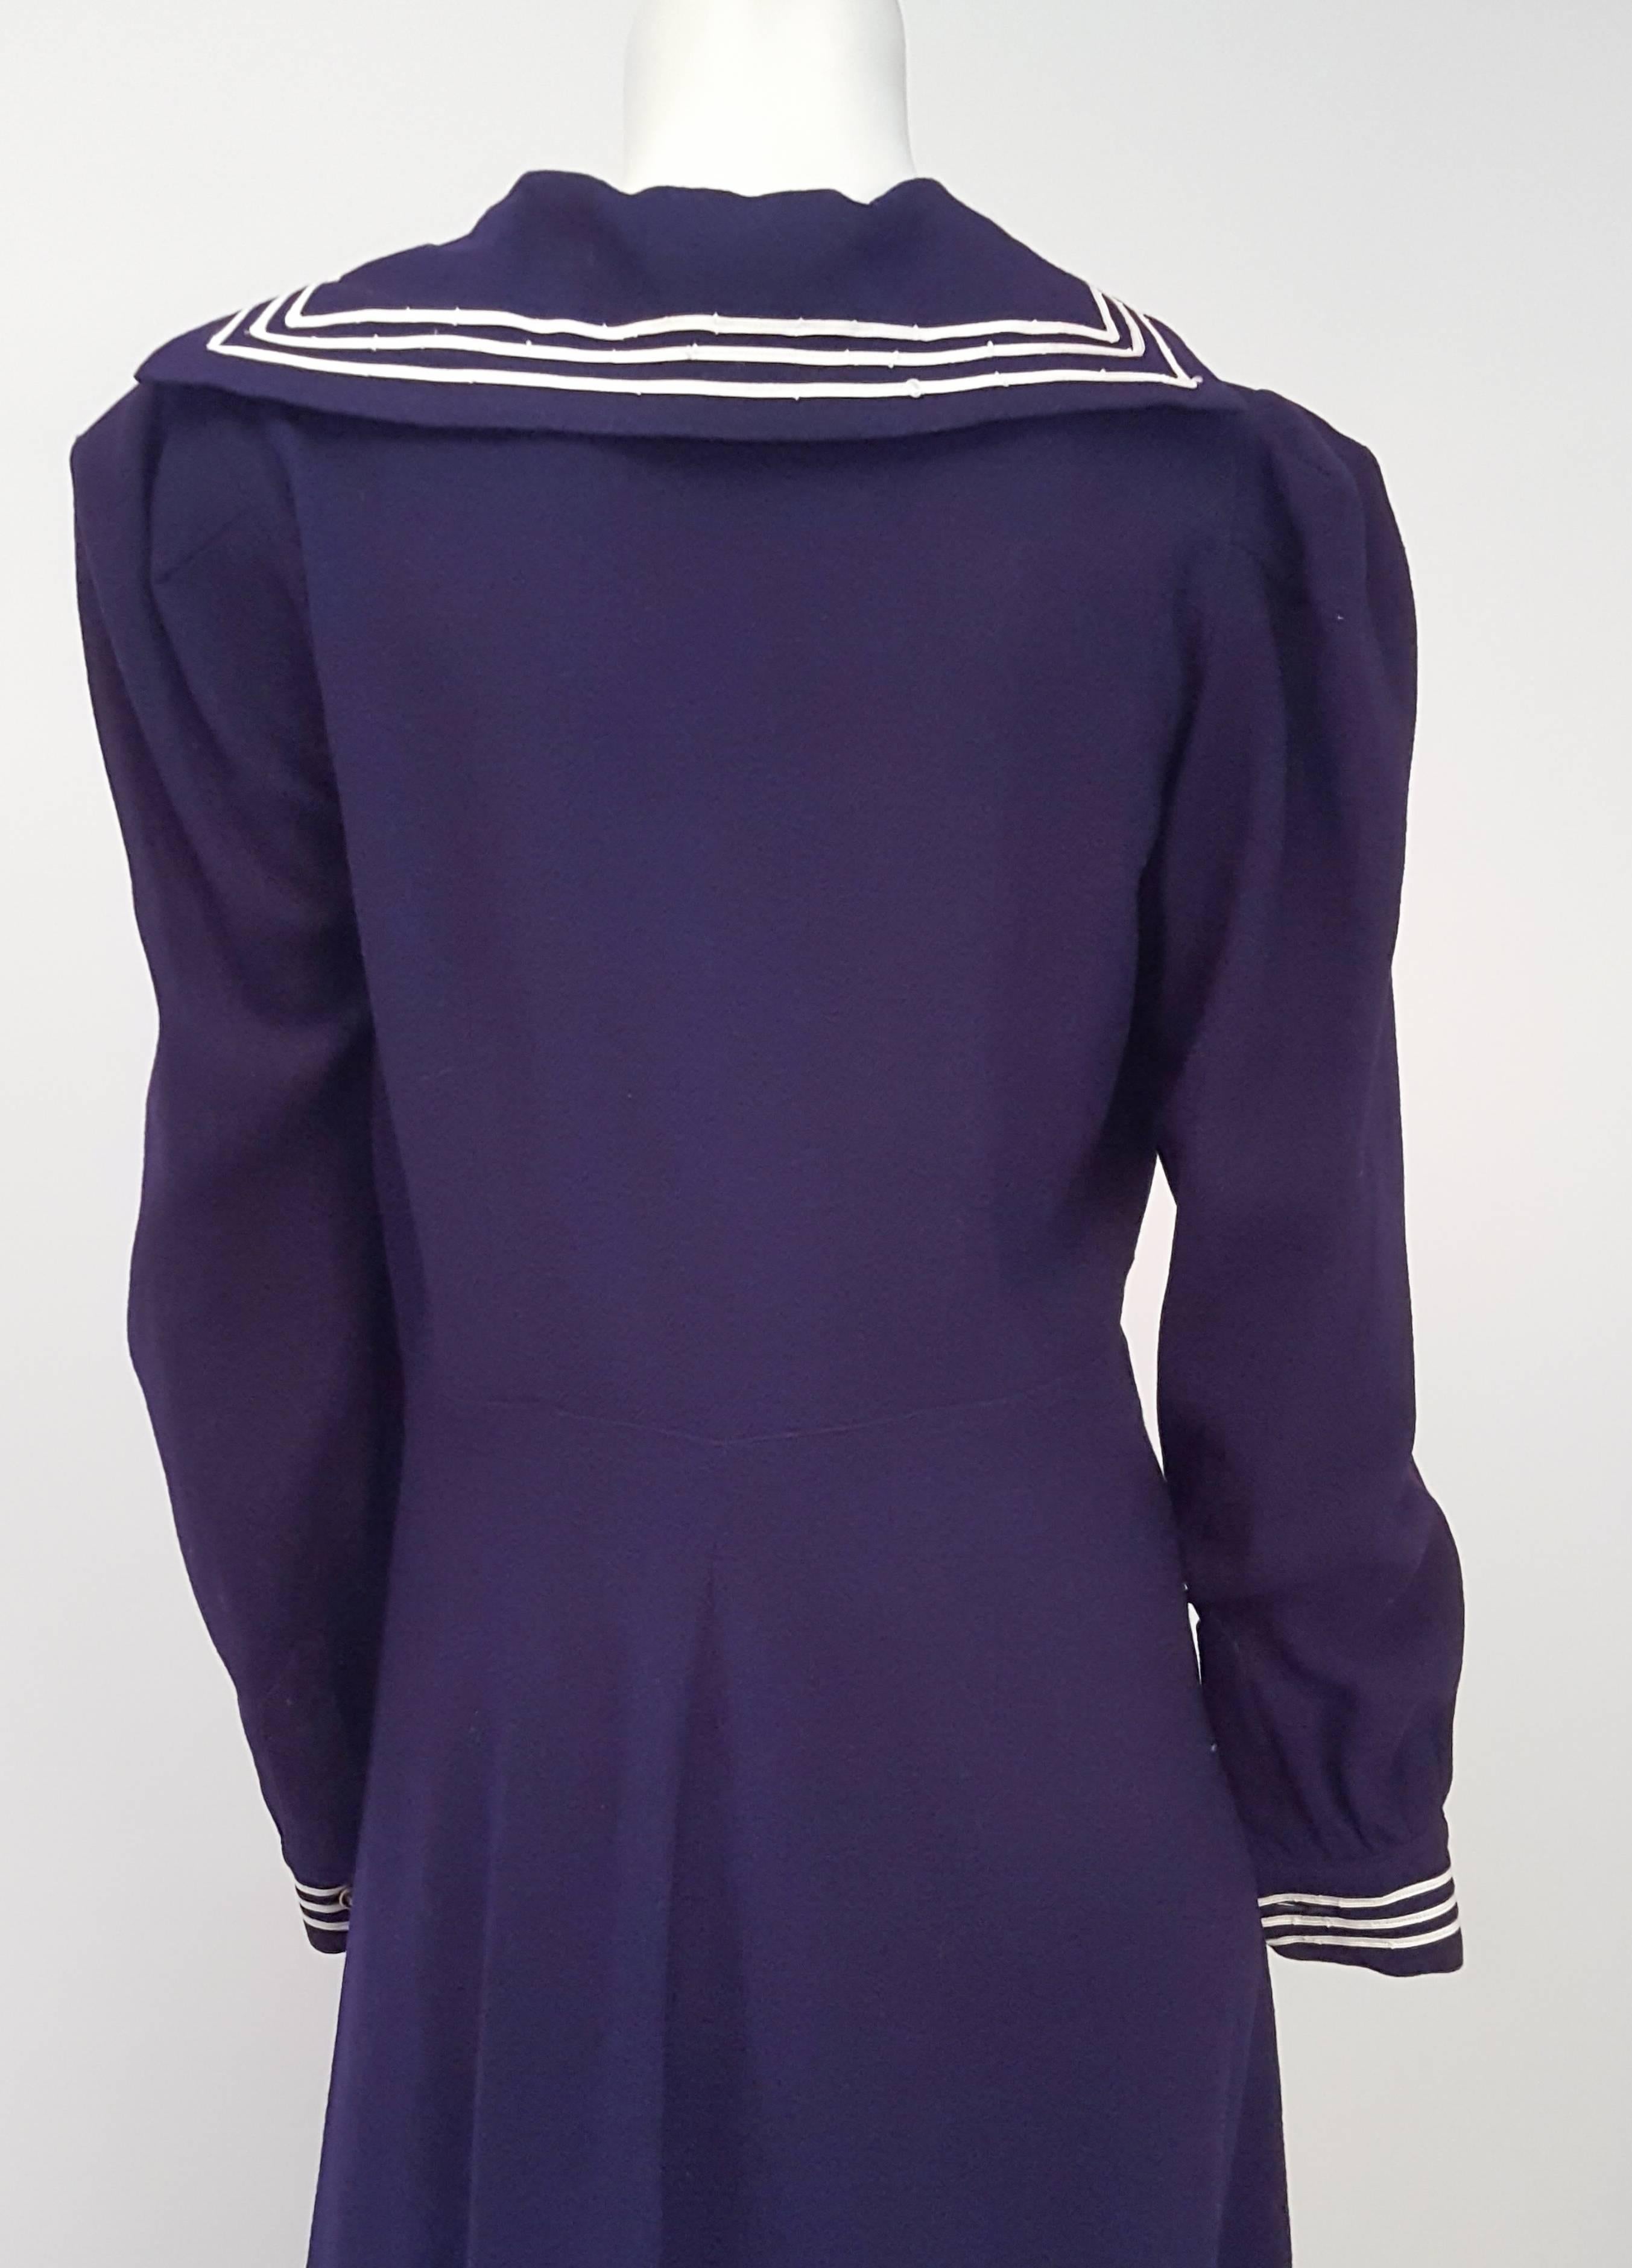 sailor navy dress